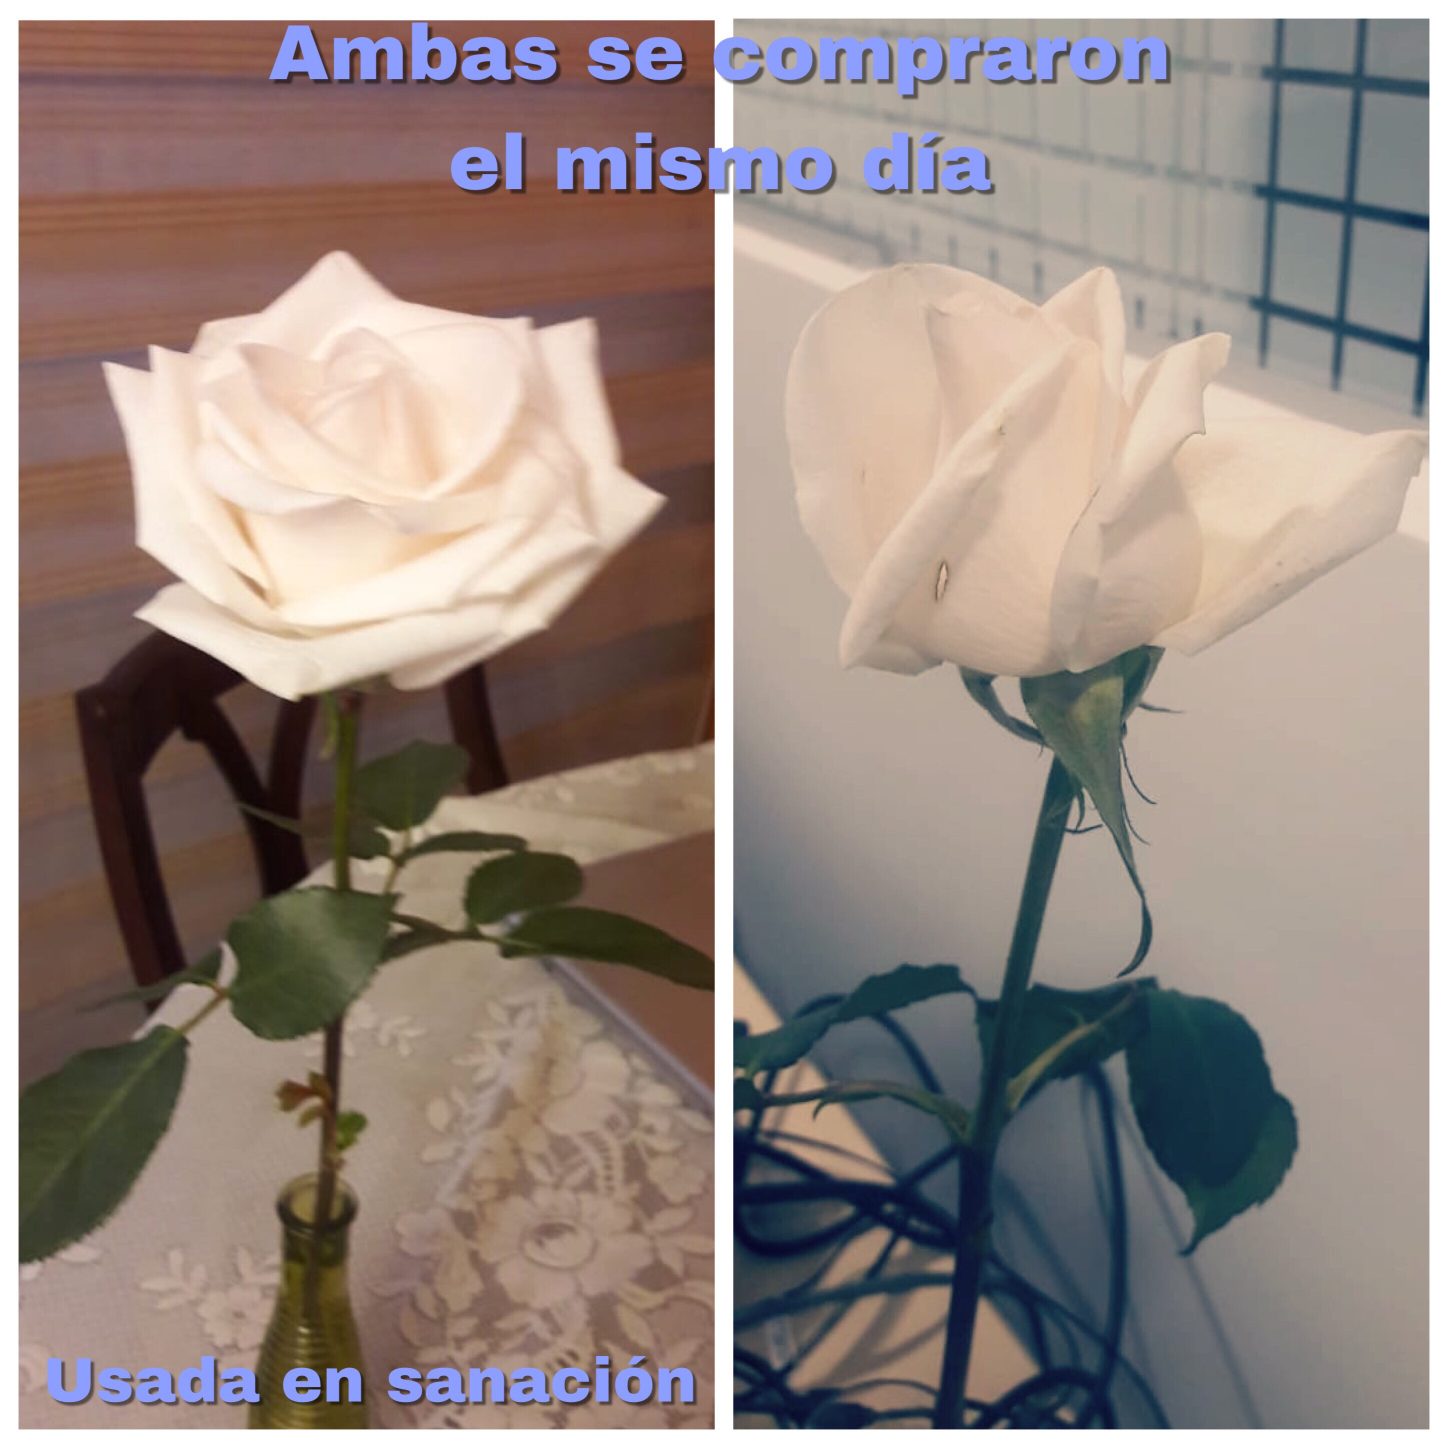 dos rosas compradas el mismo día, rosa izquierda usada para la sanación